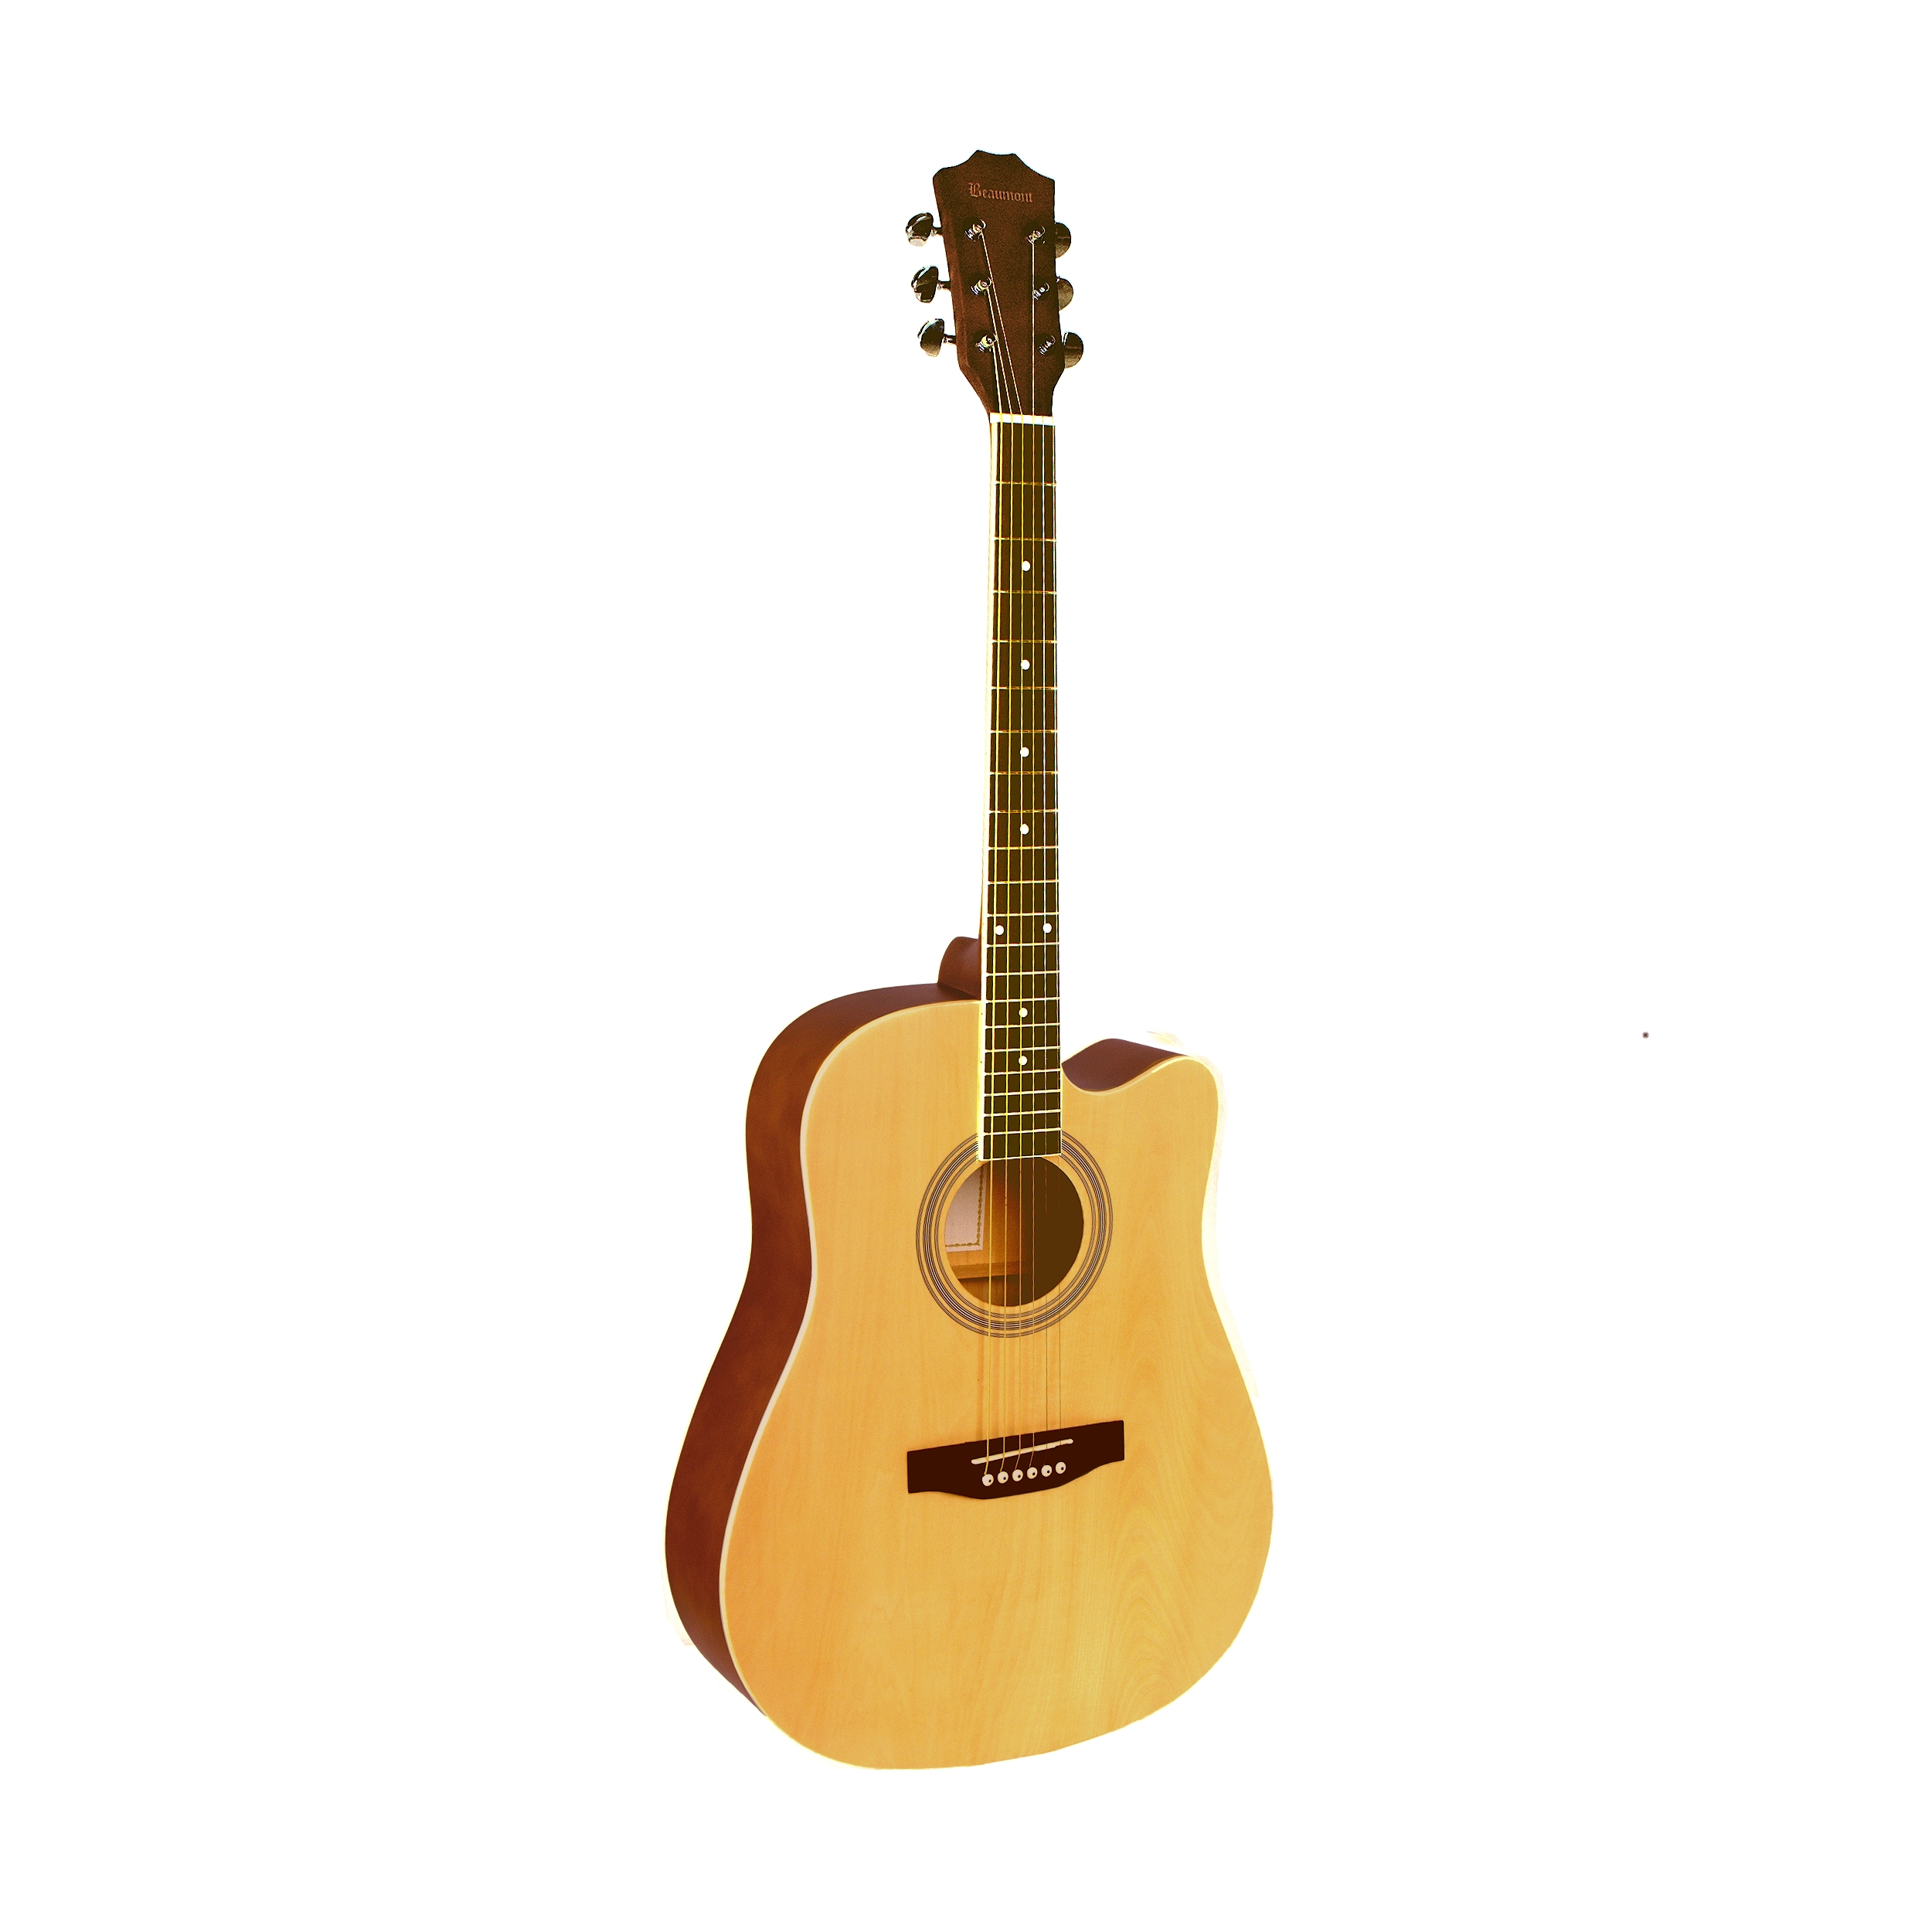 Акустические гитары Beaumont DG141 гитара акустическая дерево 97см с вырезом